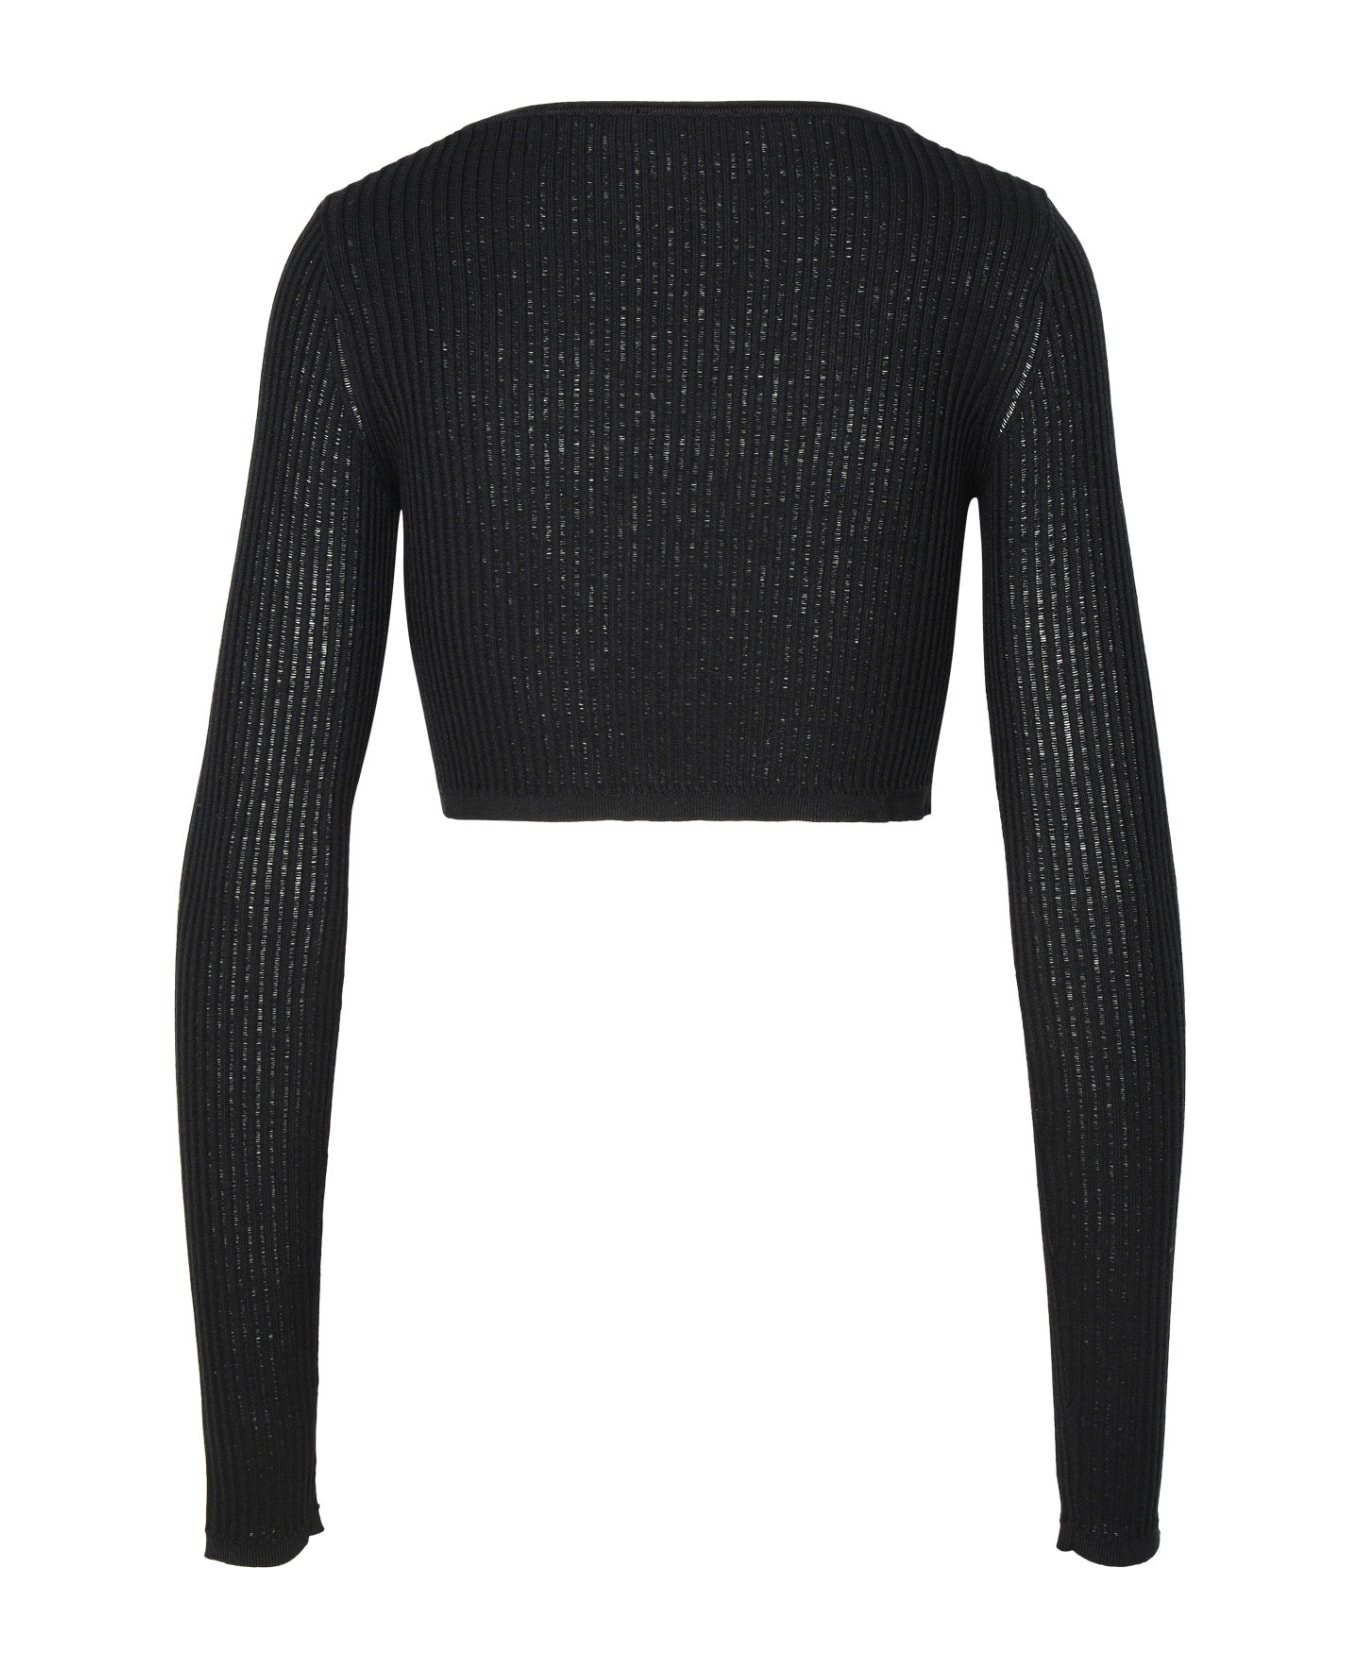 Blumarine Crop Sweater In Black Viscose Blend - Black